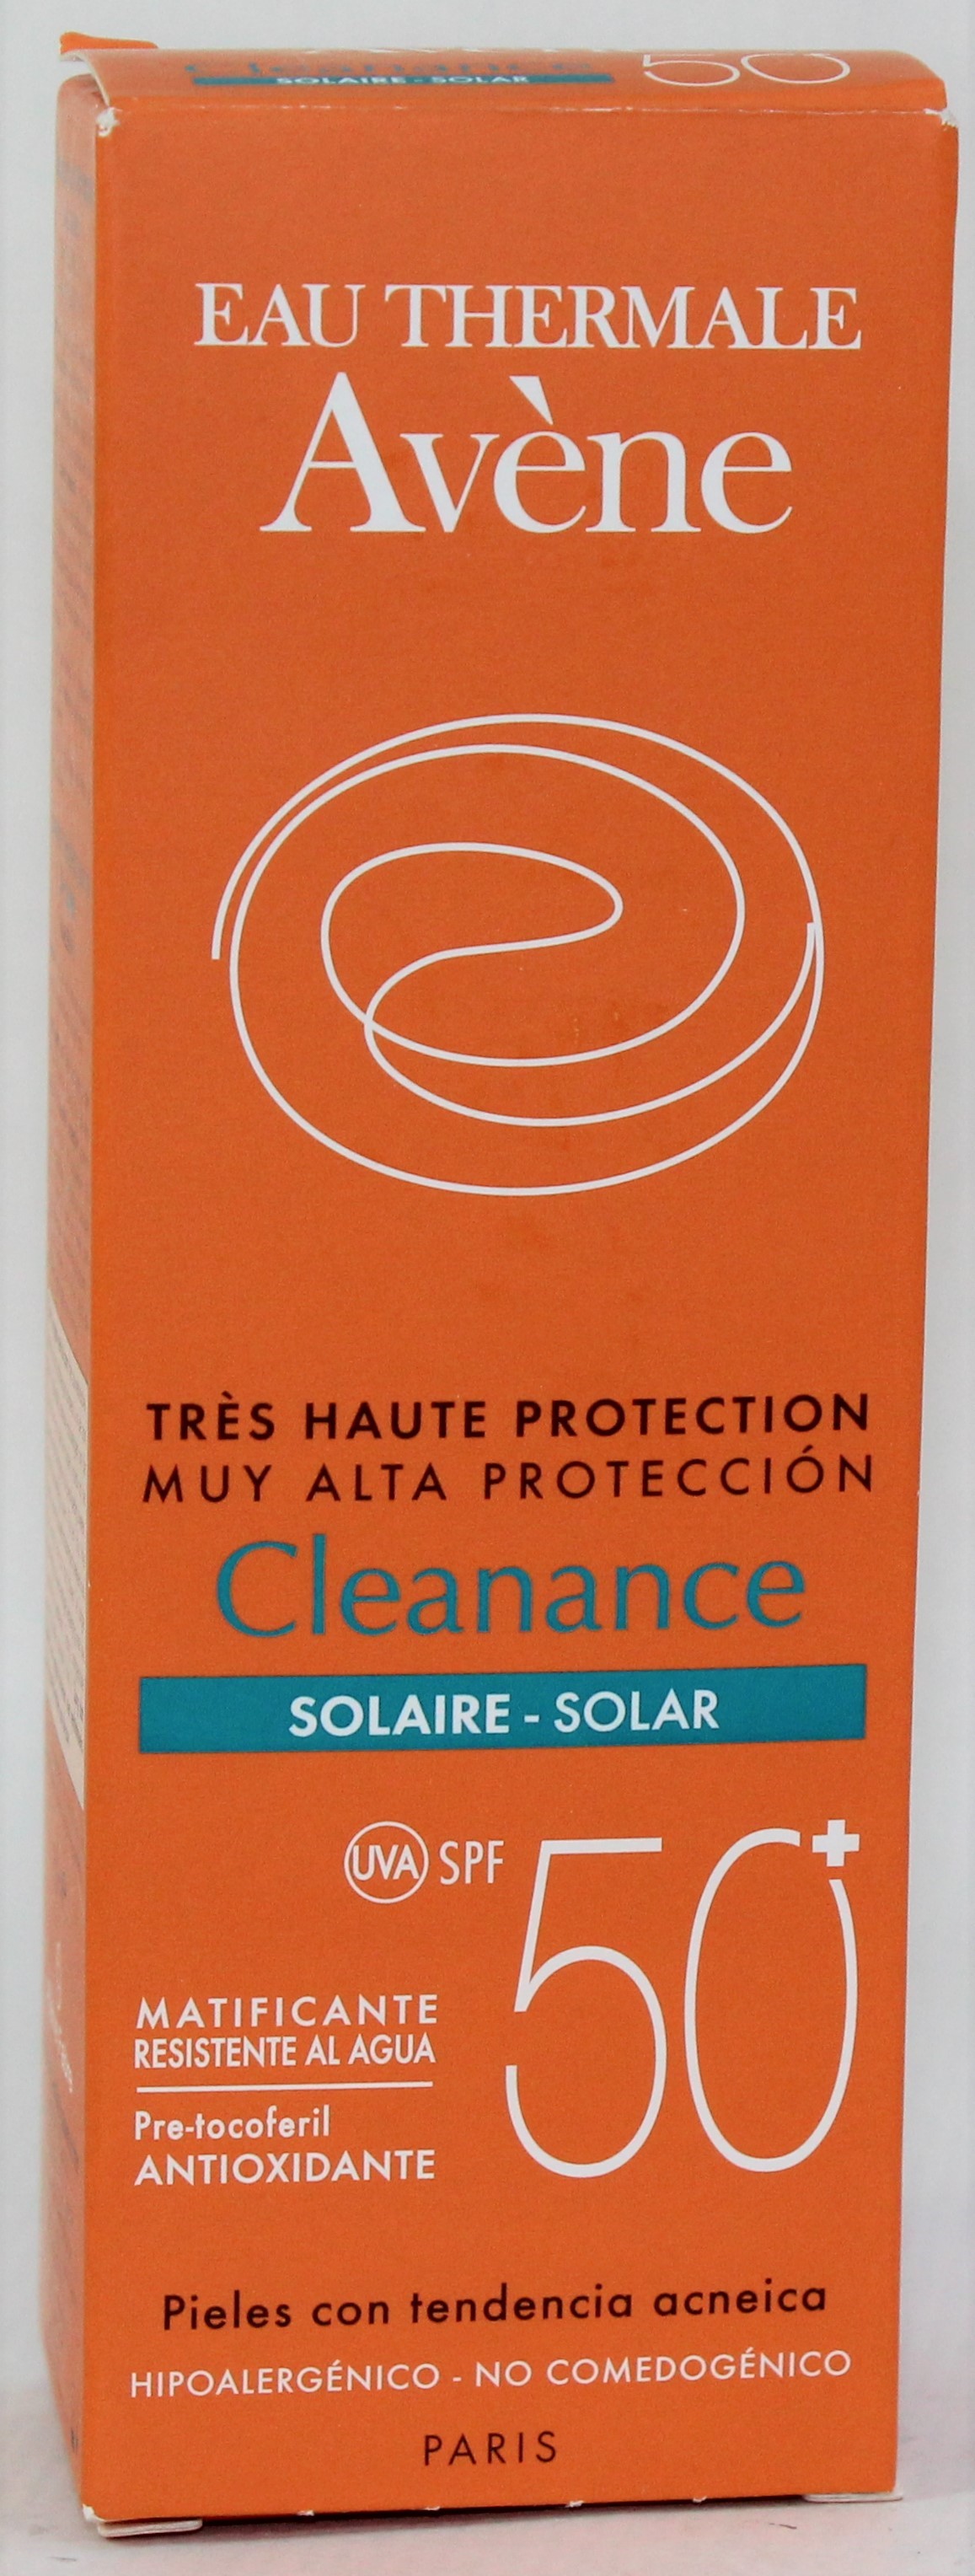 AVENE SOLAR CLEANANCE MATIFICANTE SPF 50+